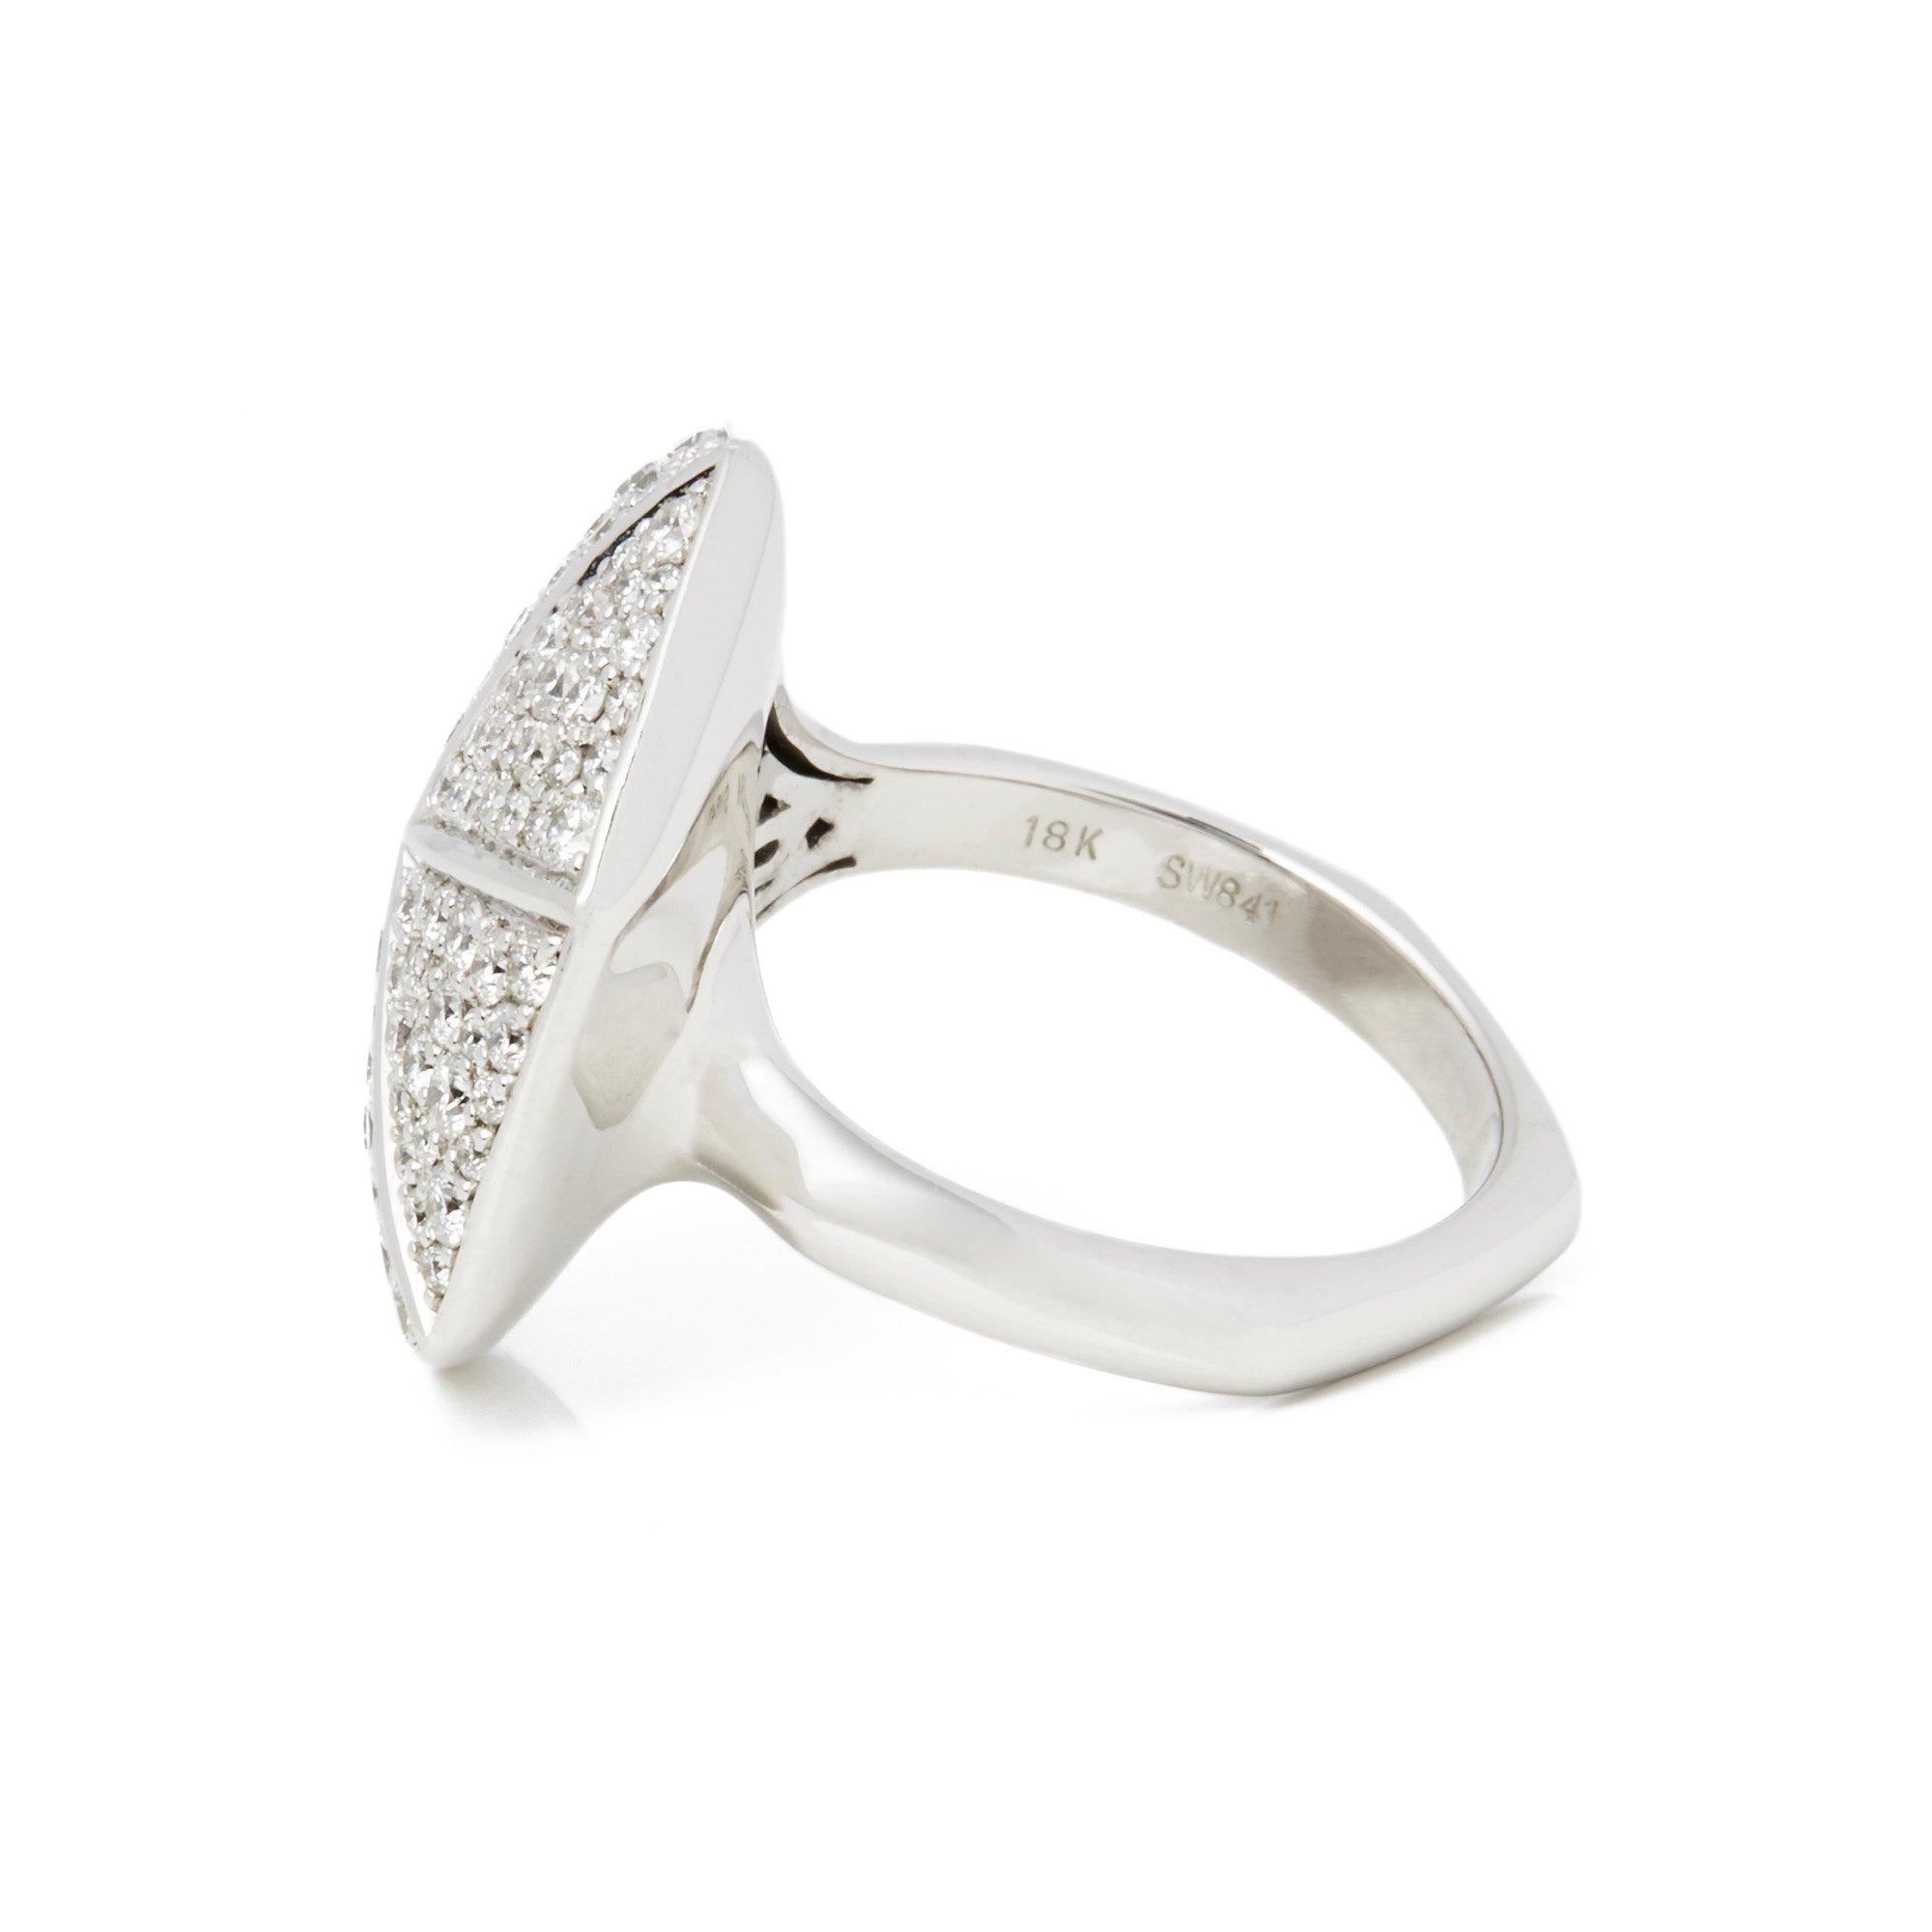 Round Cut Stephen Webster 18 Karat White Gold Diamond Deco Ring